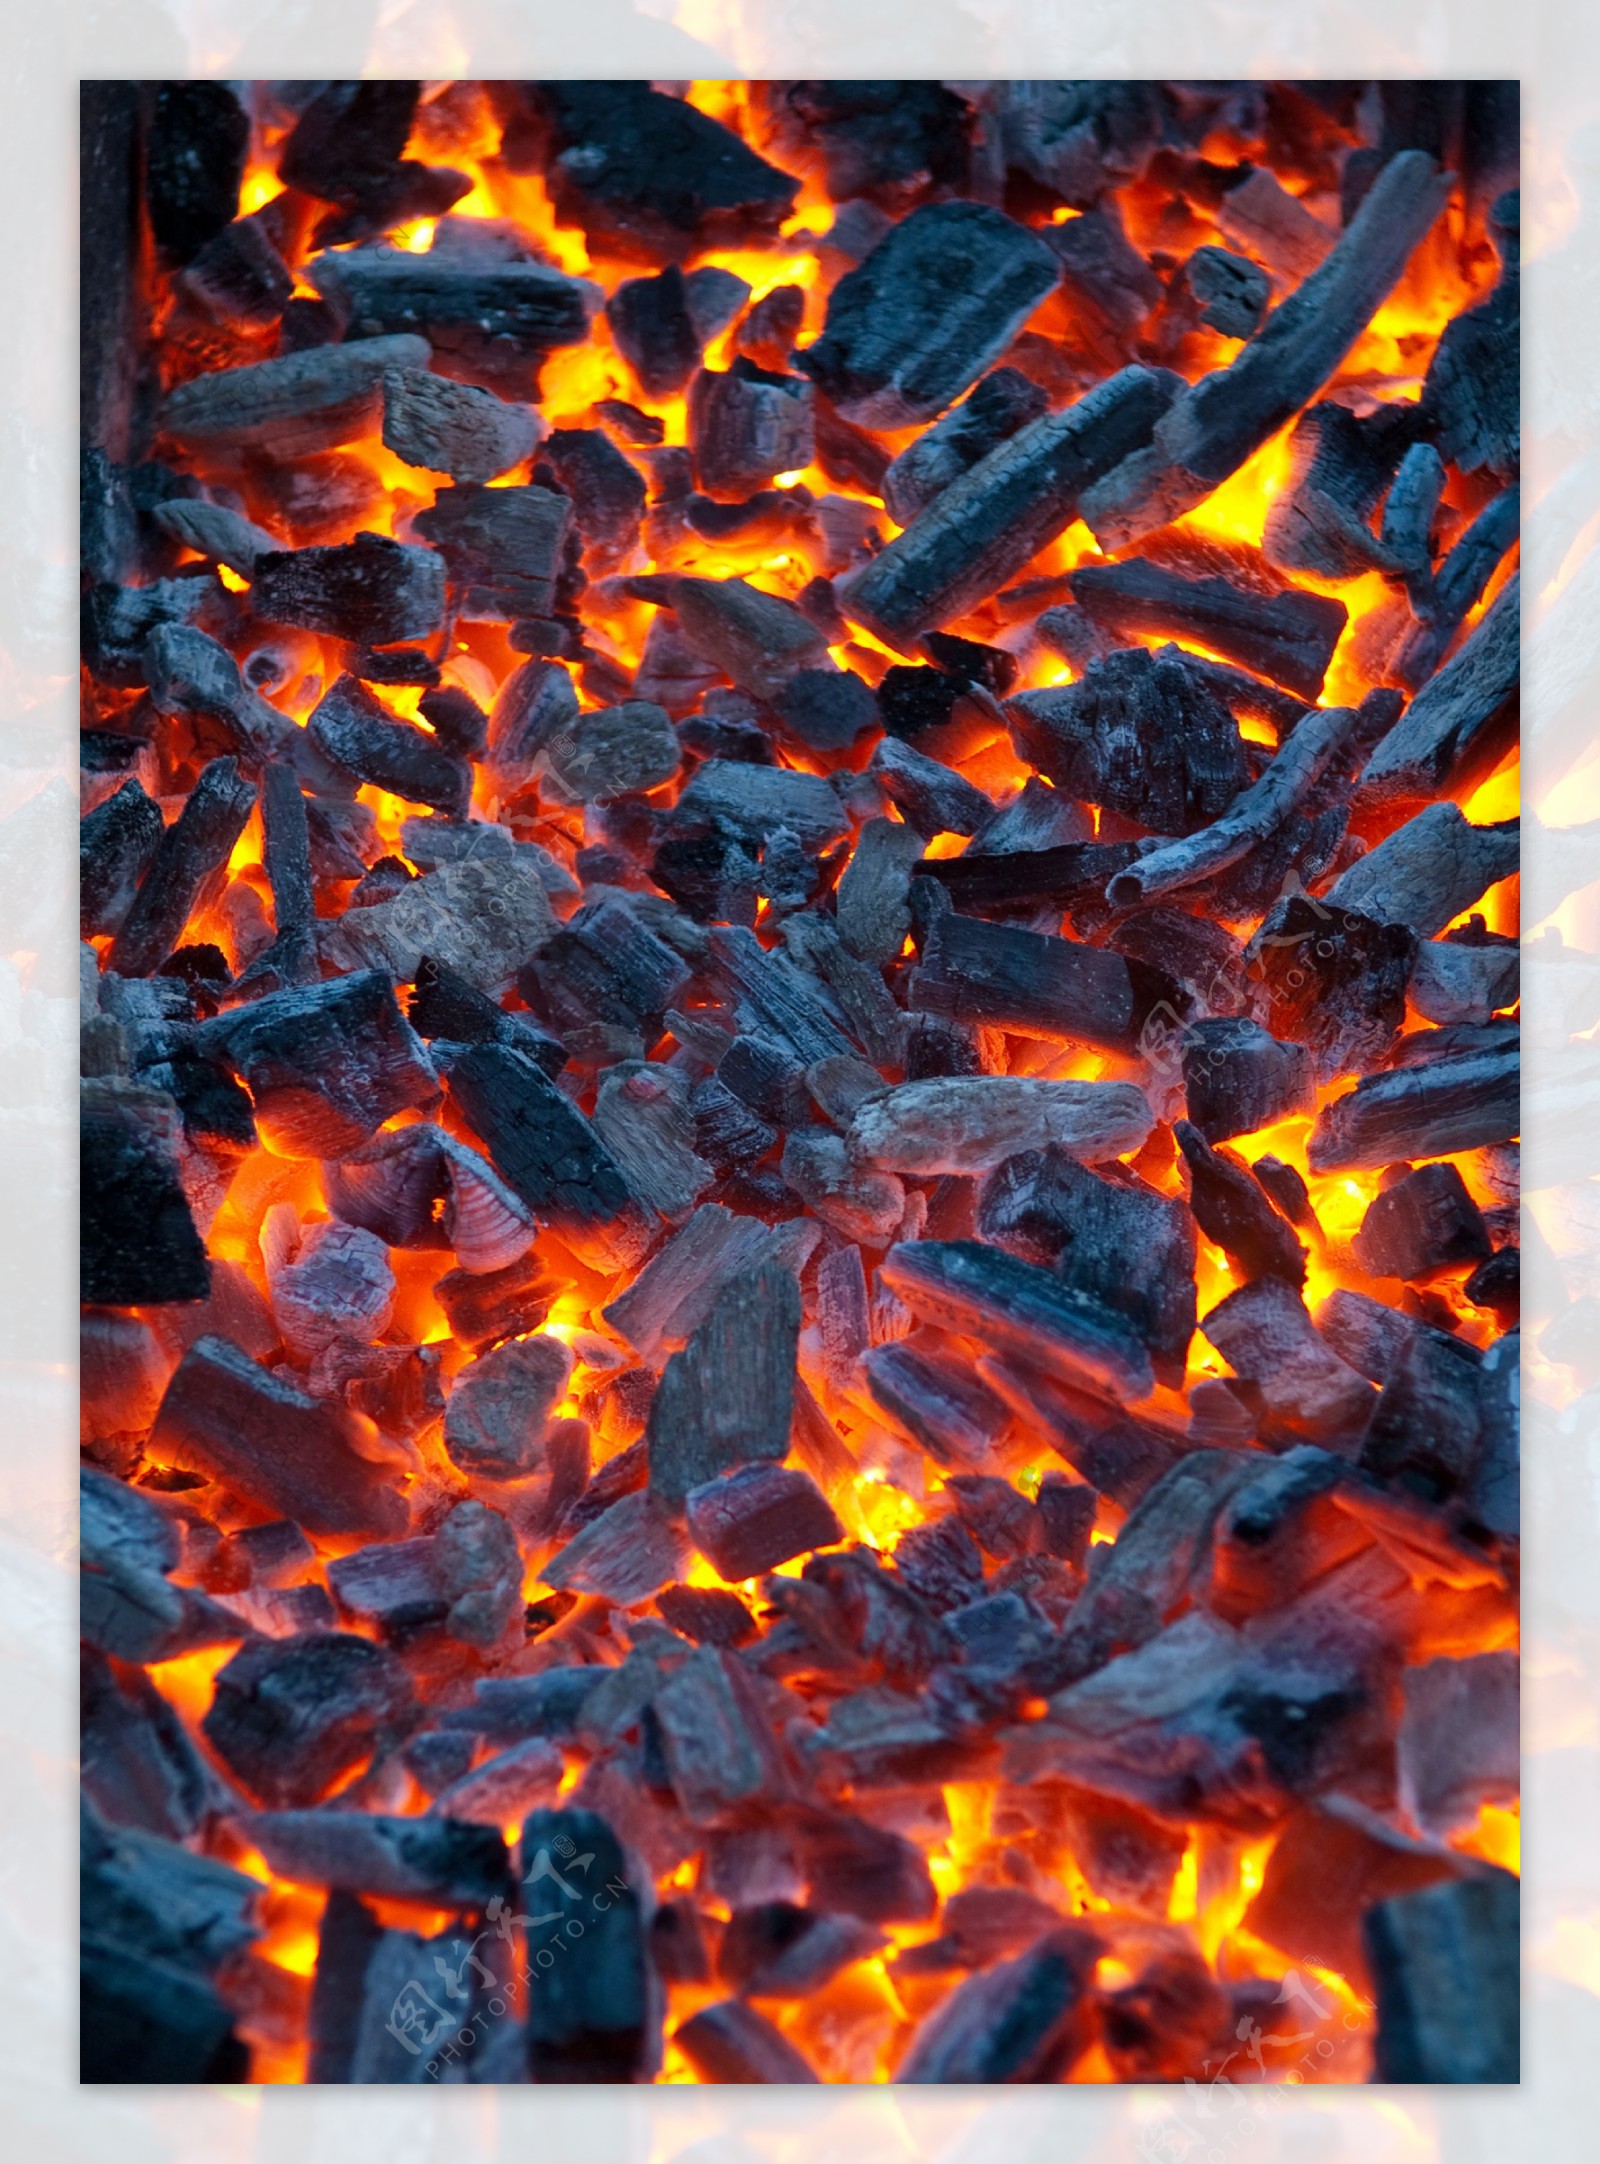 燃烧的火炭图片